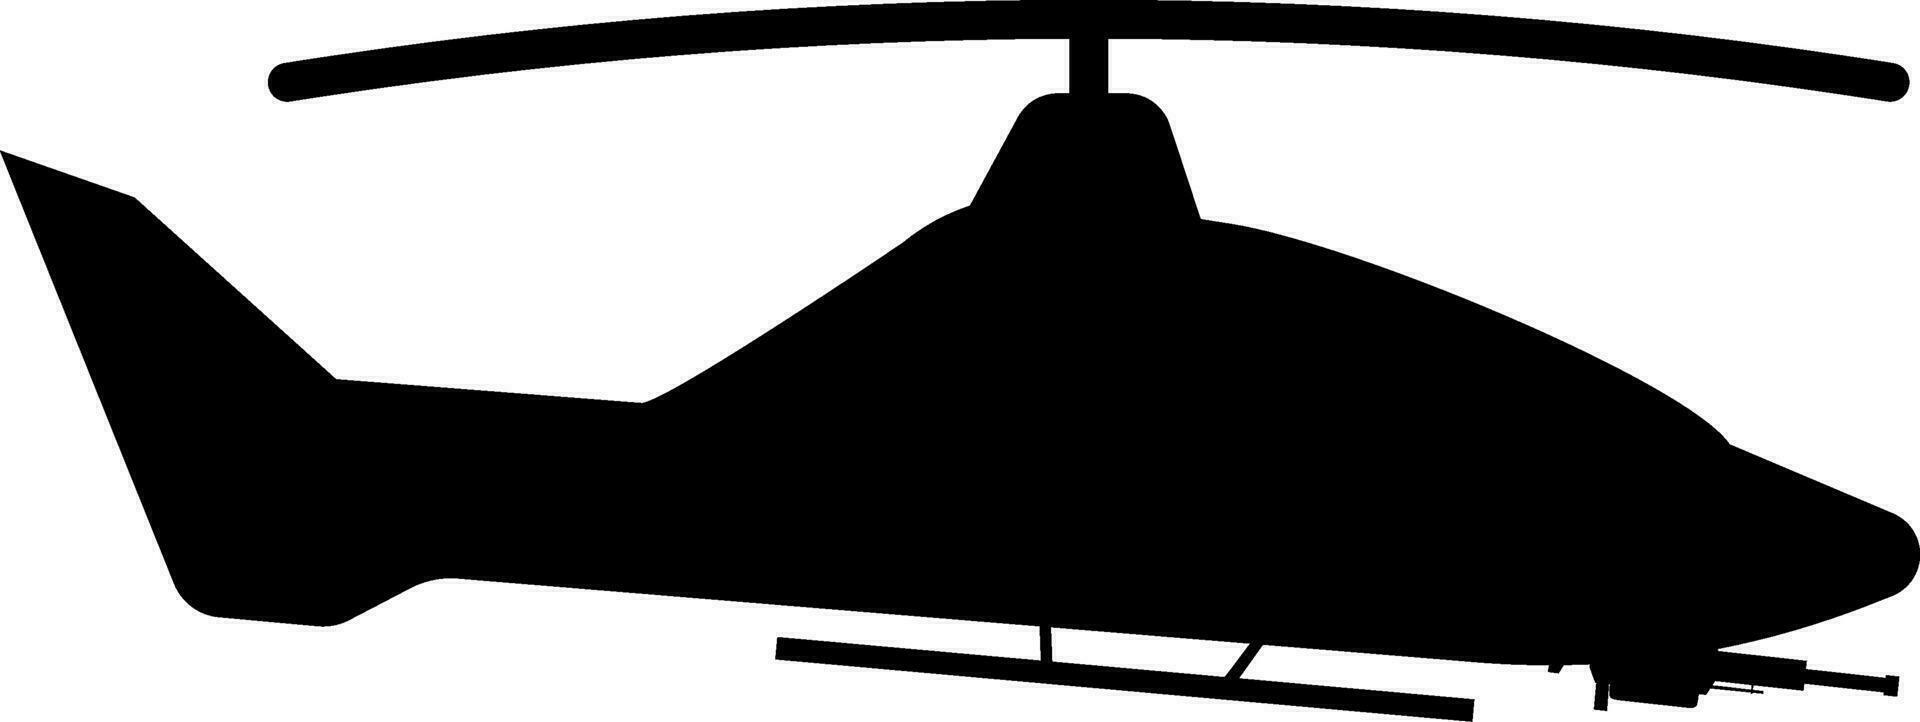 helikopter ikon vektor illustration. ge sig på helikopter silhuett för ikon, symbol eller tecken. ge sig på helikopter symbol för design handla om militär, krig, slagfält, flygplan, armén och antenn strejk